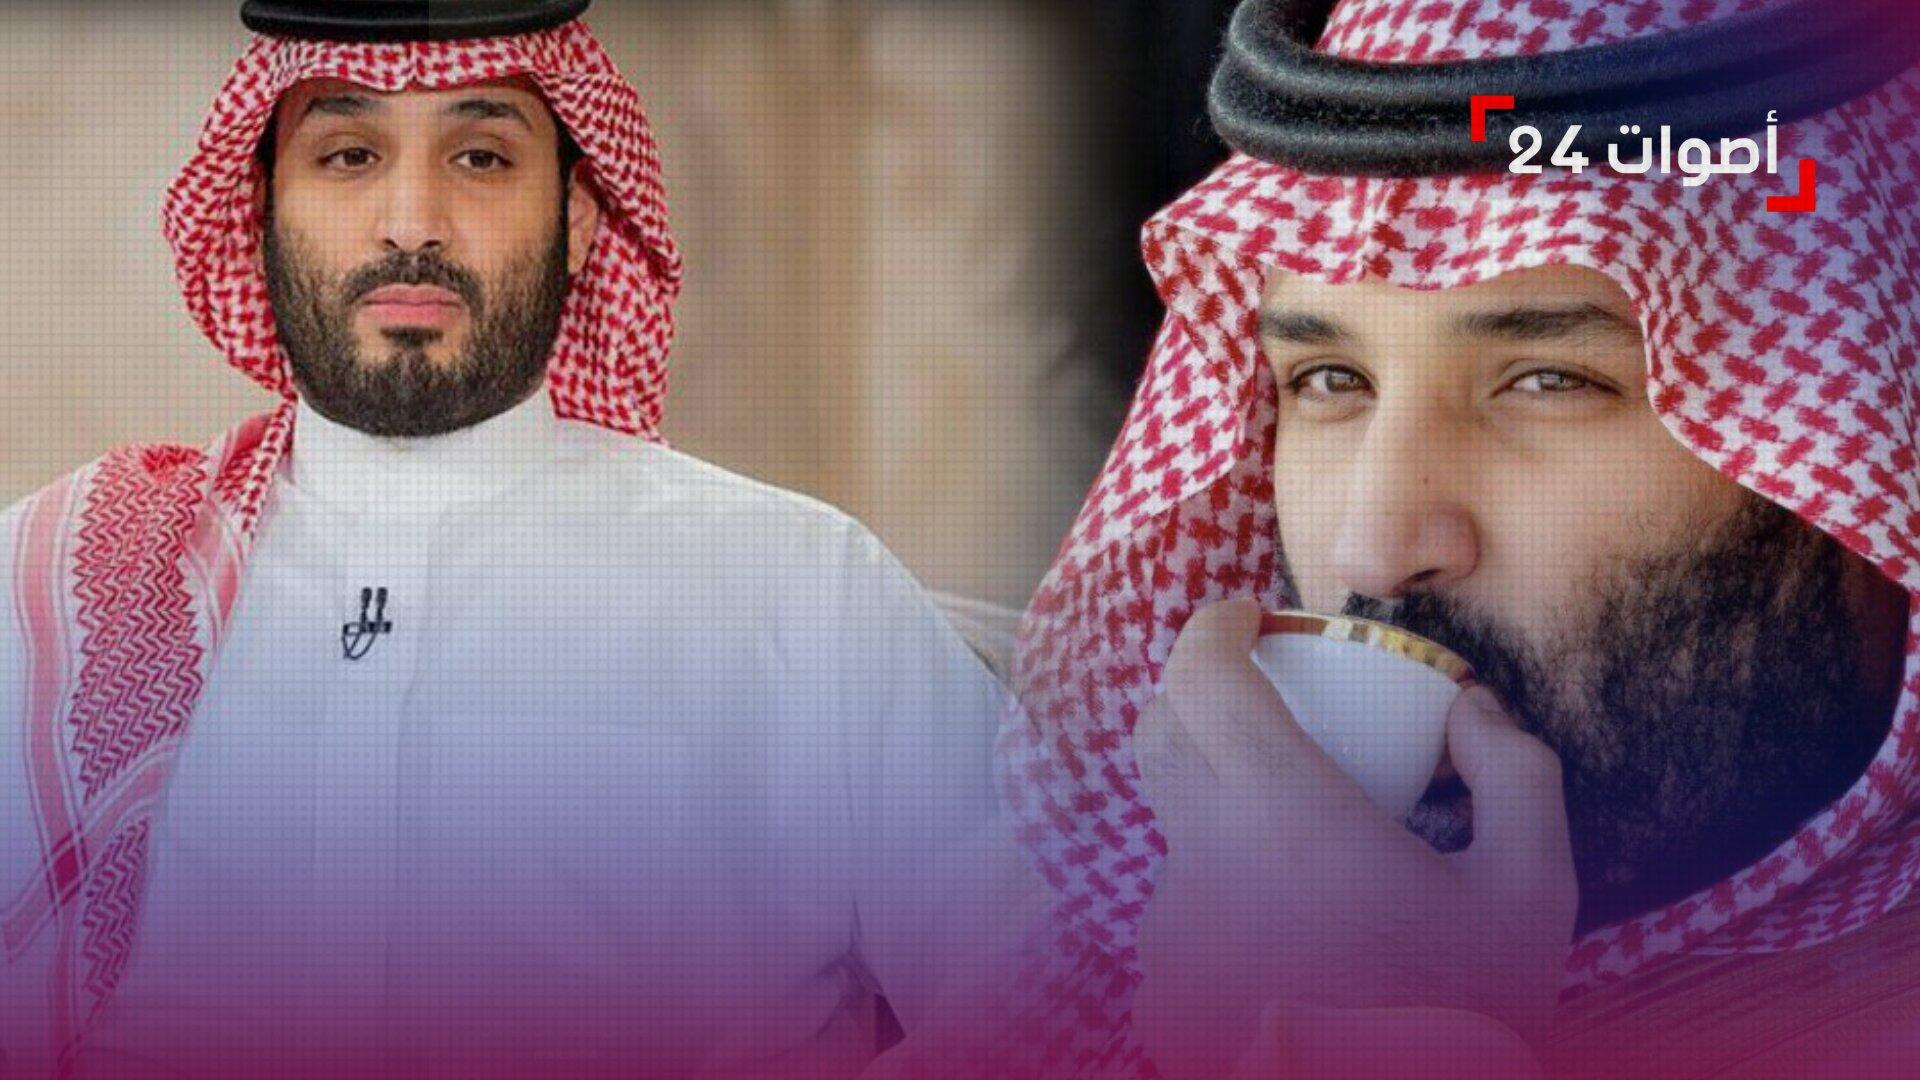 كوب ولي العهد السعودي مغطس بالذهب.. لن تتخيل سعر الفنجان الذي يتناول به الأمير محمد بن سلمان قهوته